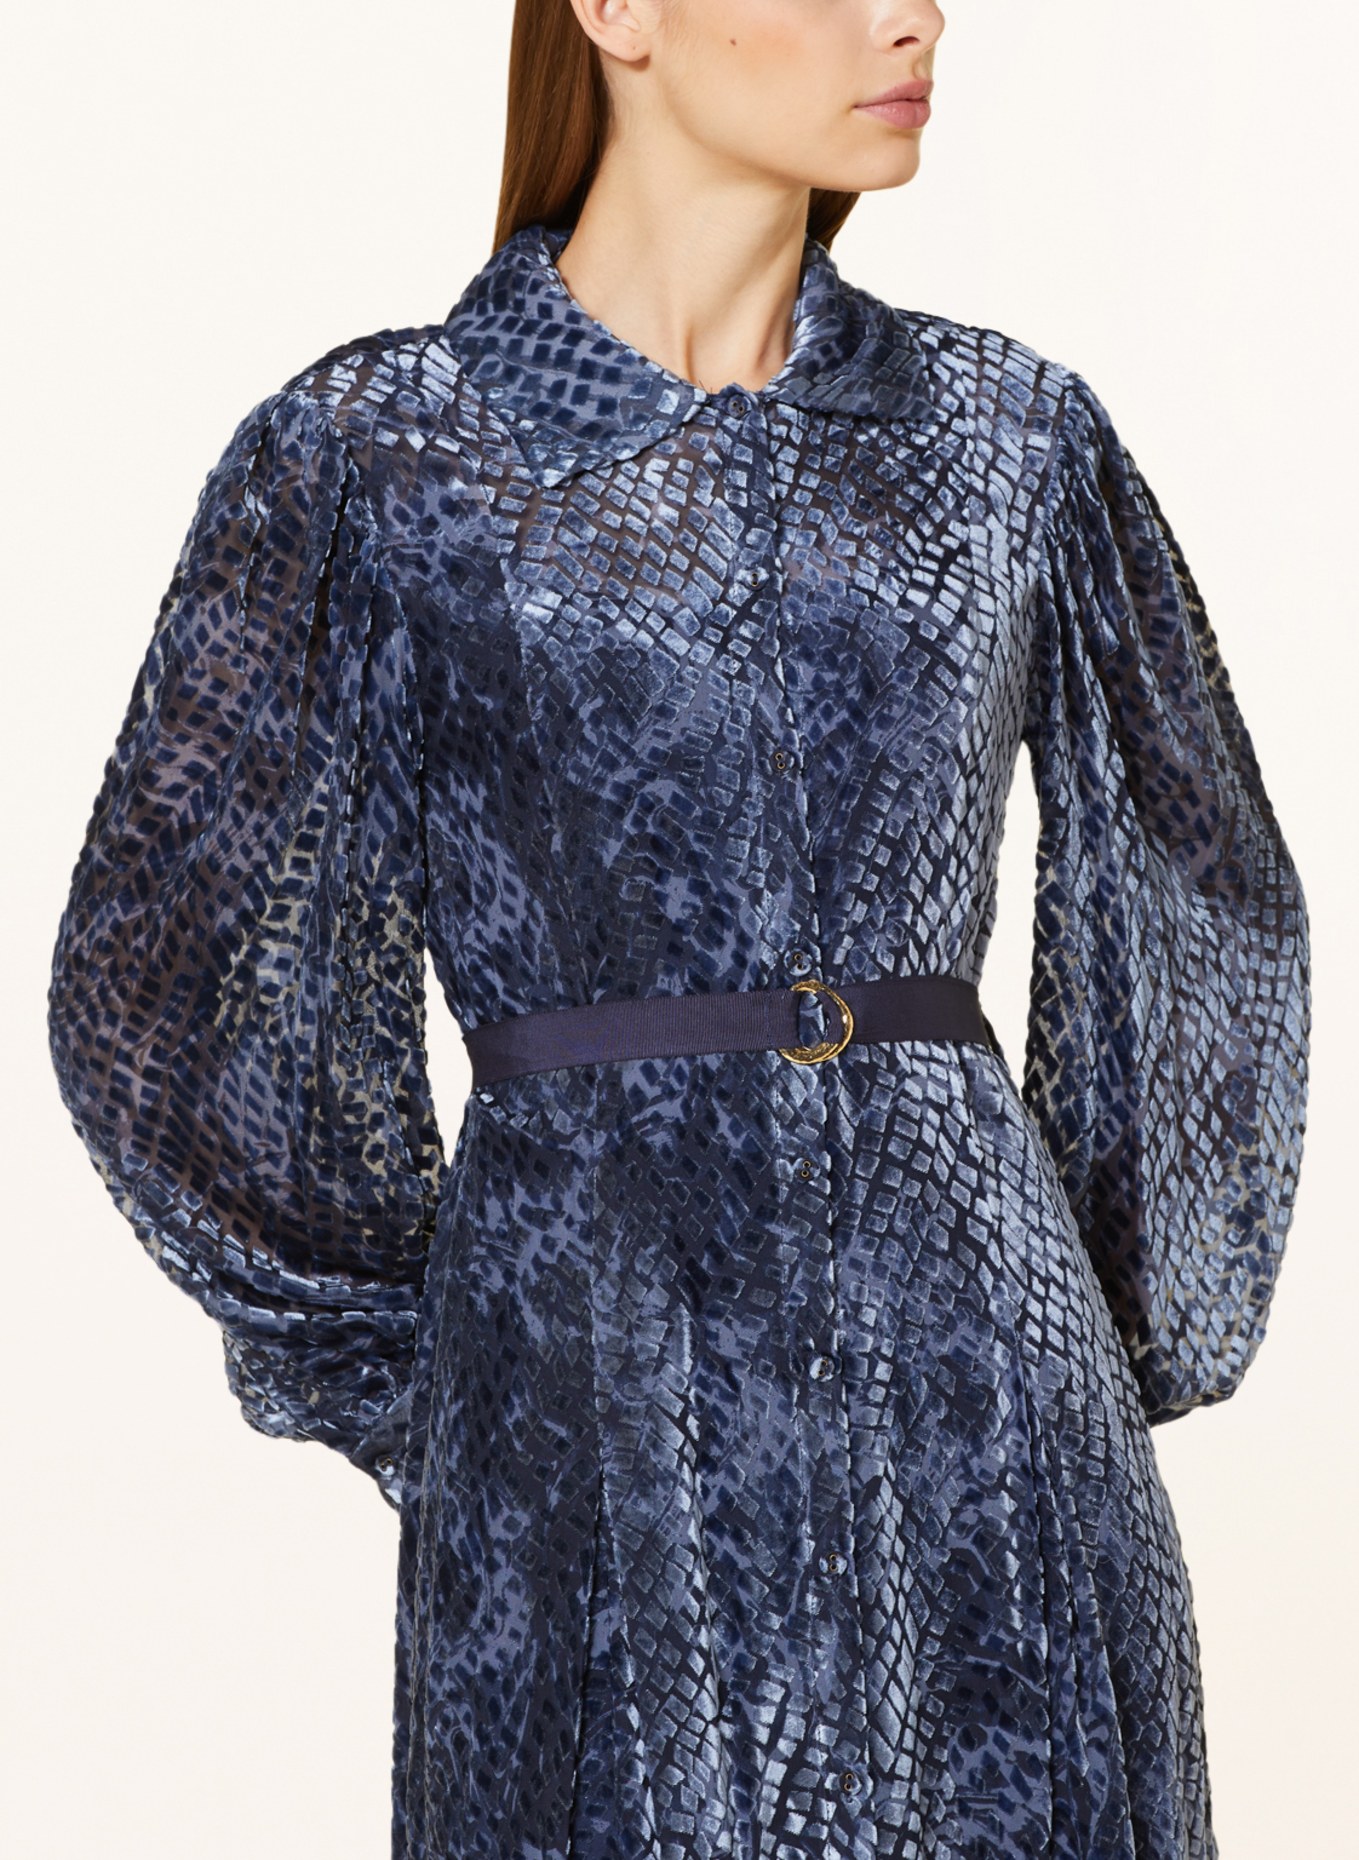 ULLA JOHNSON Shirt dress in velvet, Color: LIGHT BLUE/ BLUE (Image 4)